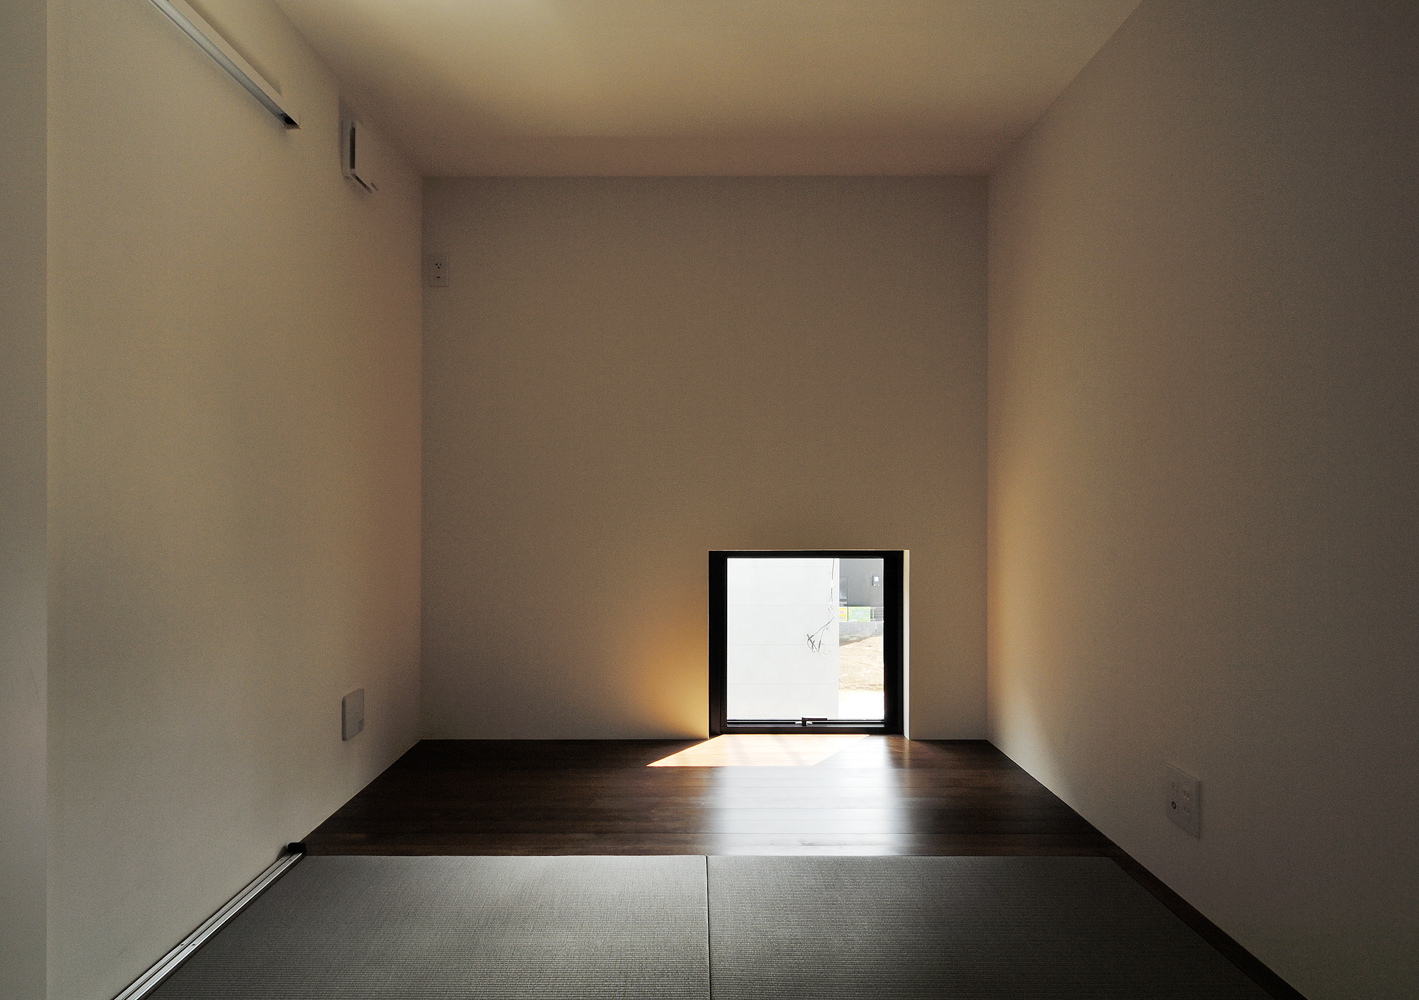 窓の位置を低く抑え部屋を暗めに設定し、モダンな建物の一部に隠れ庵のような和室